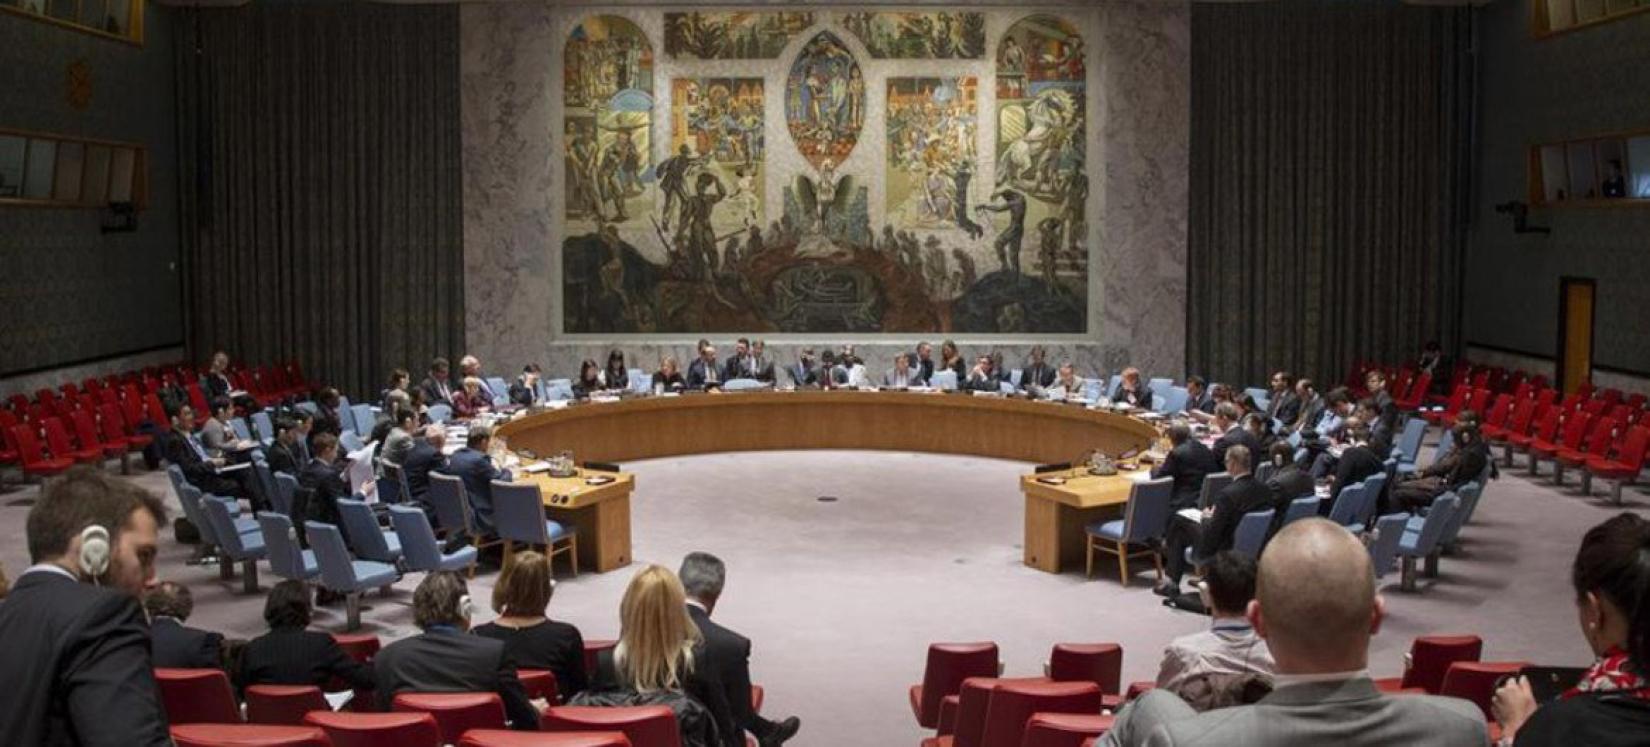 Visão ampla da Câmara do Conselho de Segurança.